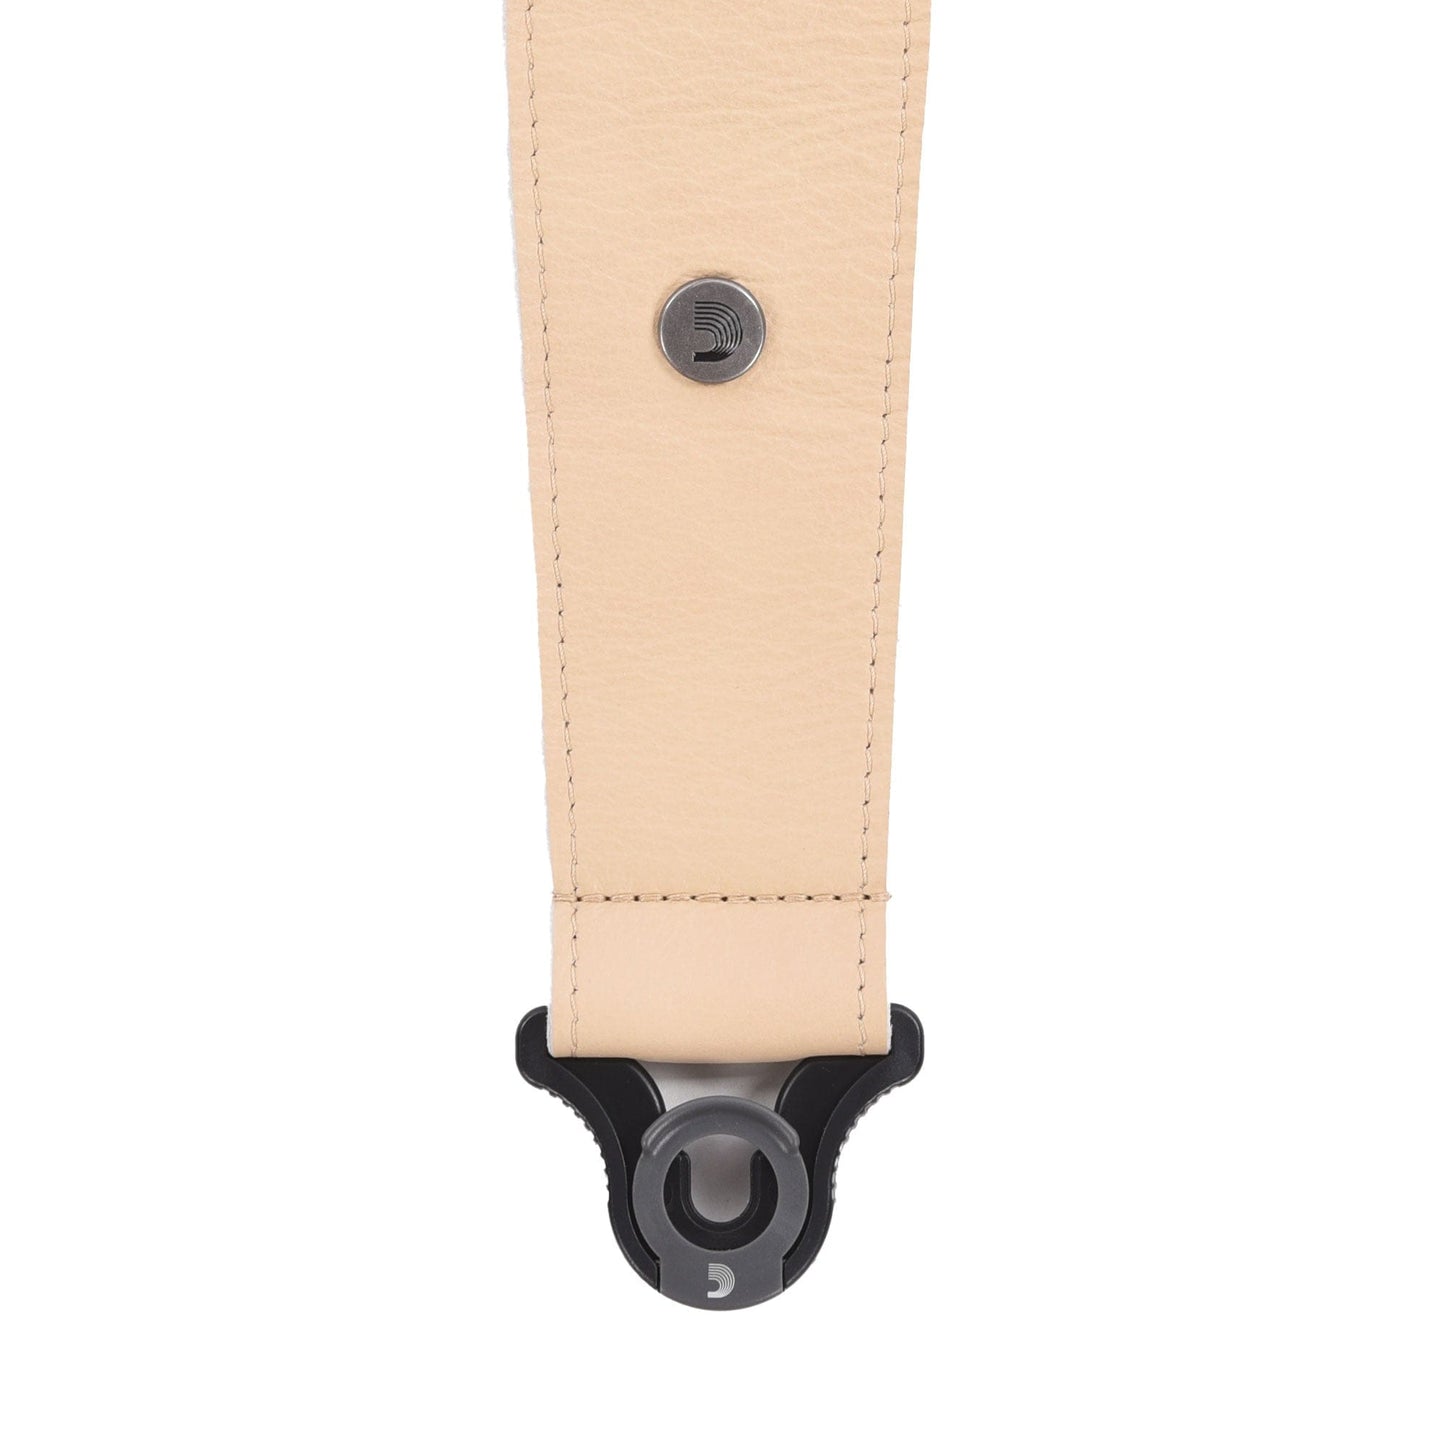 D'Addario 2.5" Comfort Leather Auto Lock Guitar Strap Tan Accessories / Straps